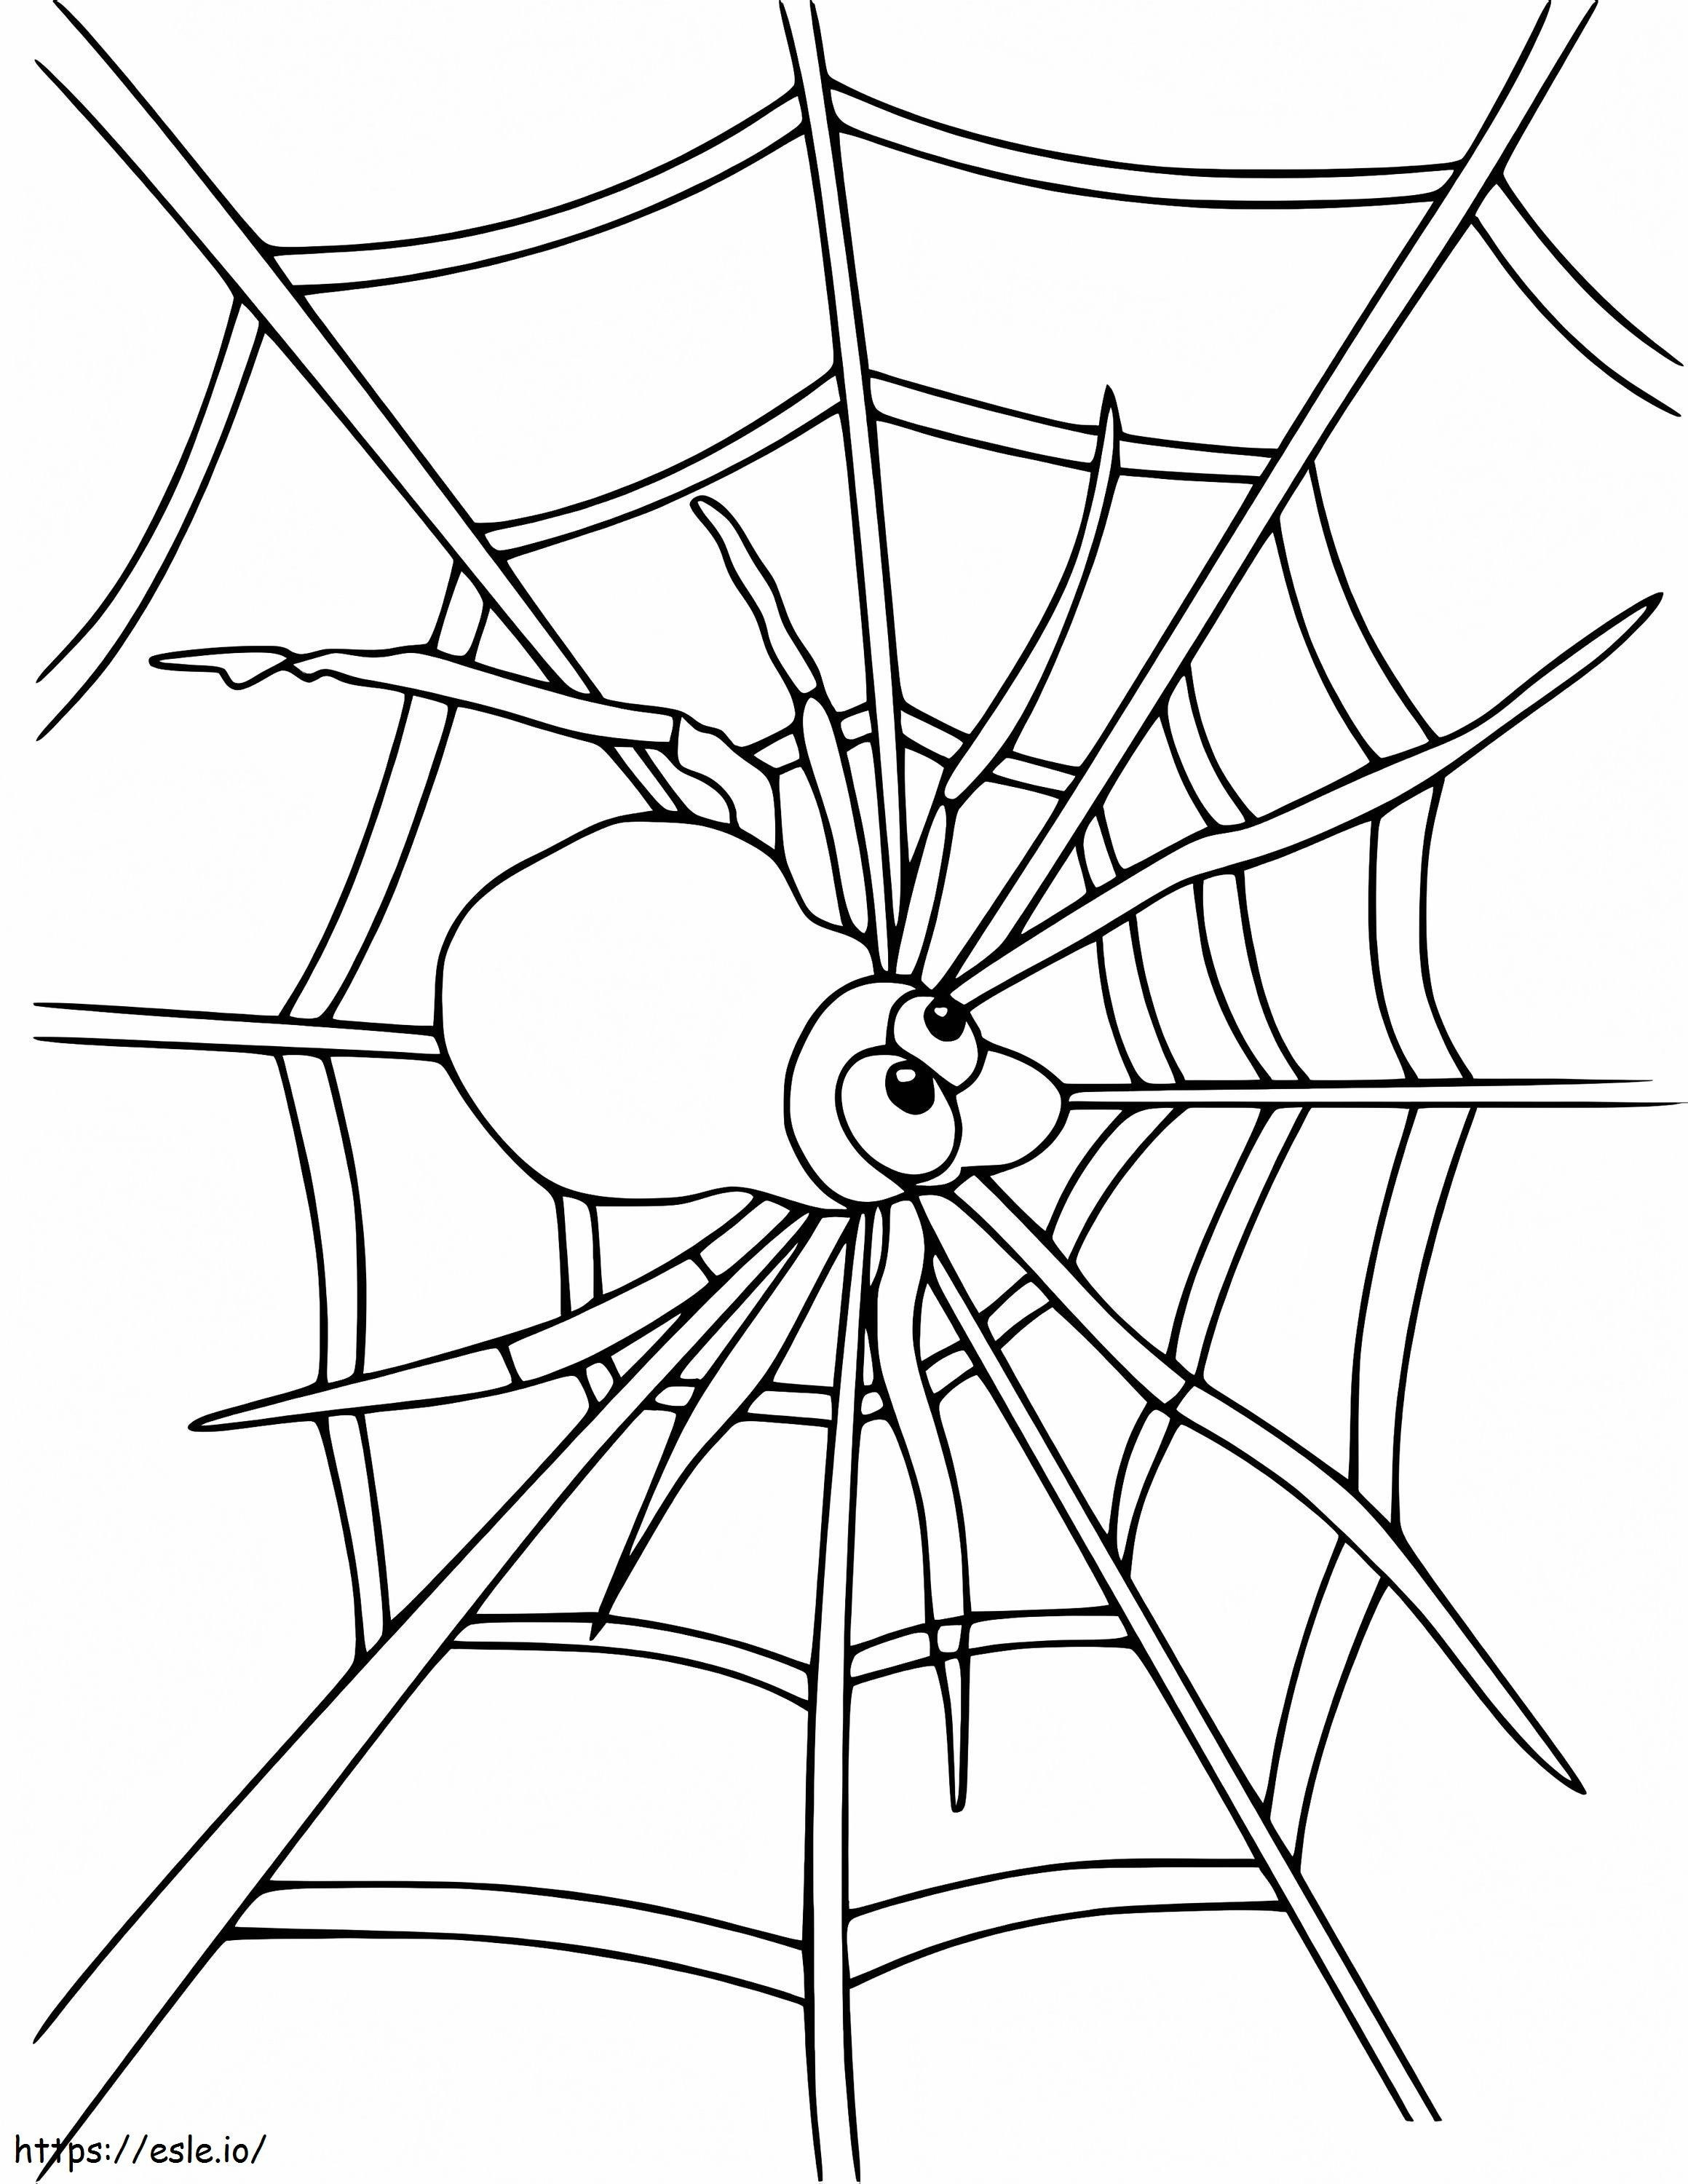 Aranha na teia de aranha 3 para colorir